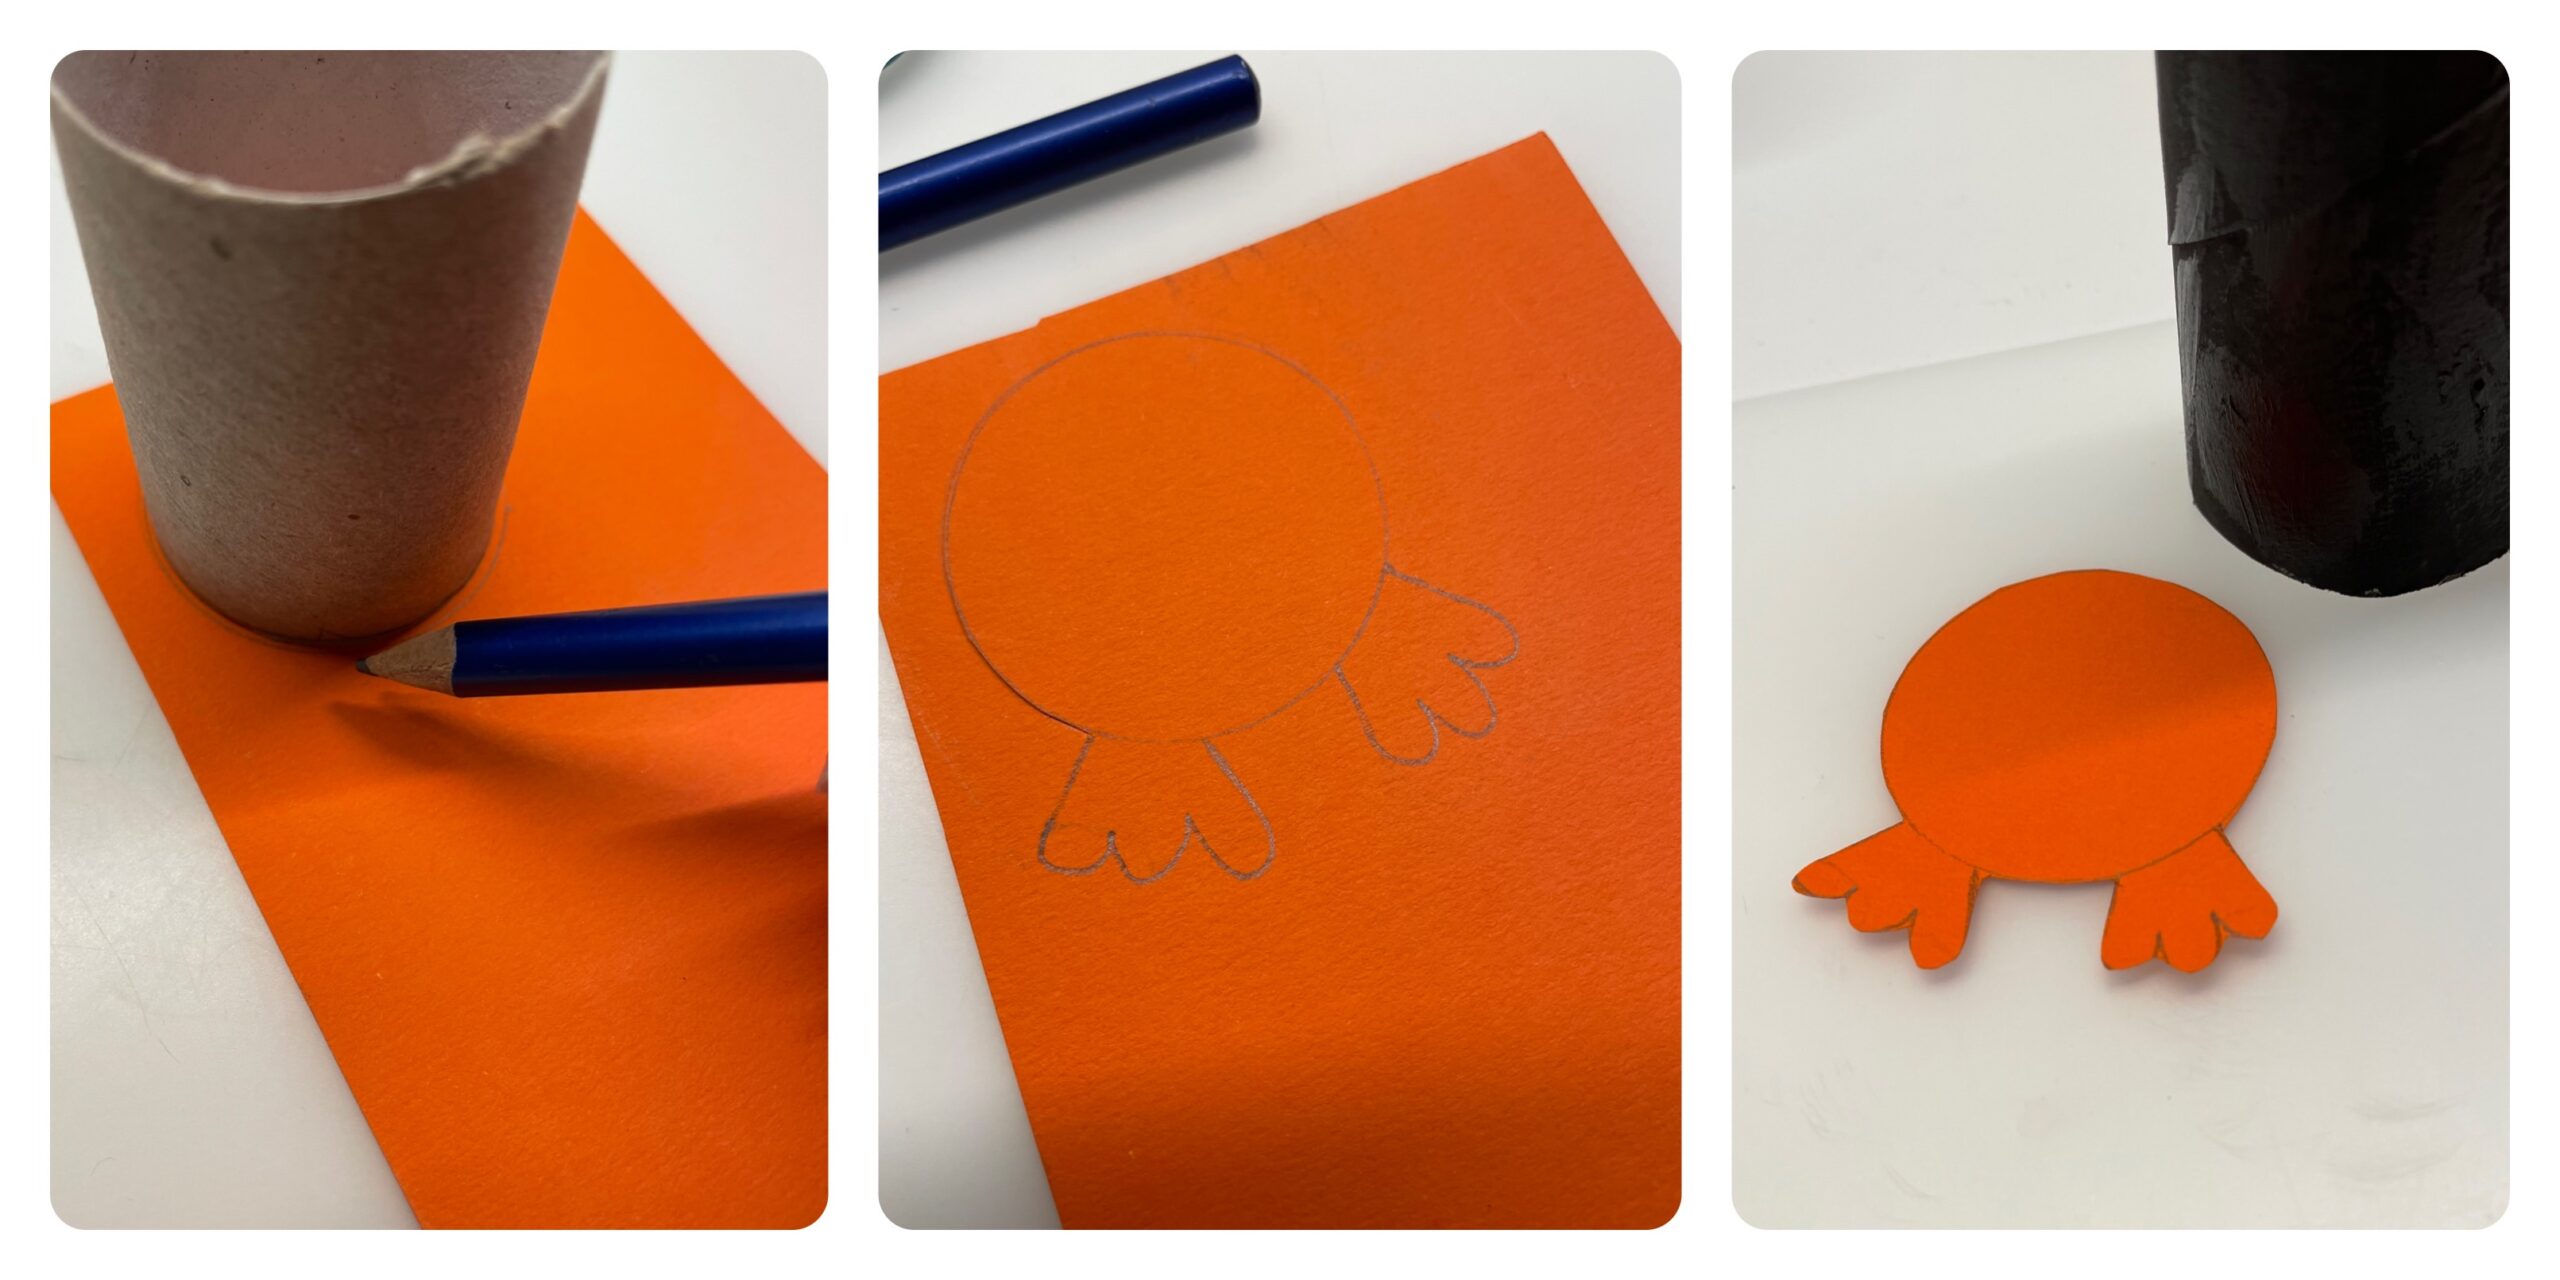 Bild zum Schritt 6 für das Bastel- und DIY-Abenteuer für Kinder: 'Jetzt stellt ihr die Papprolle auf orangefarbenes Papier und zeichnet...'